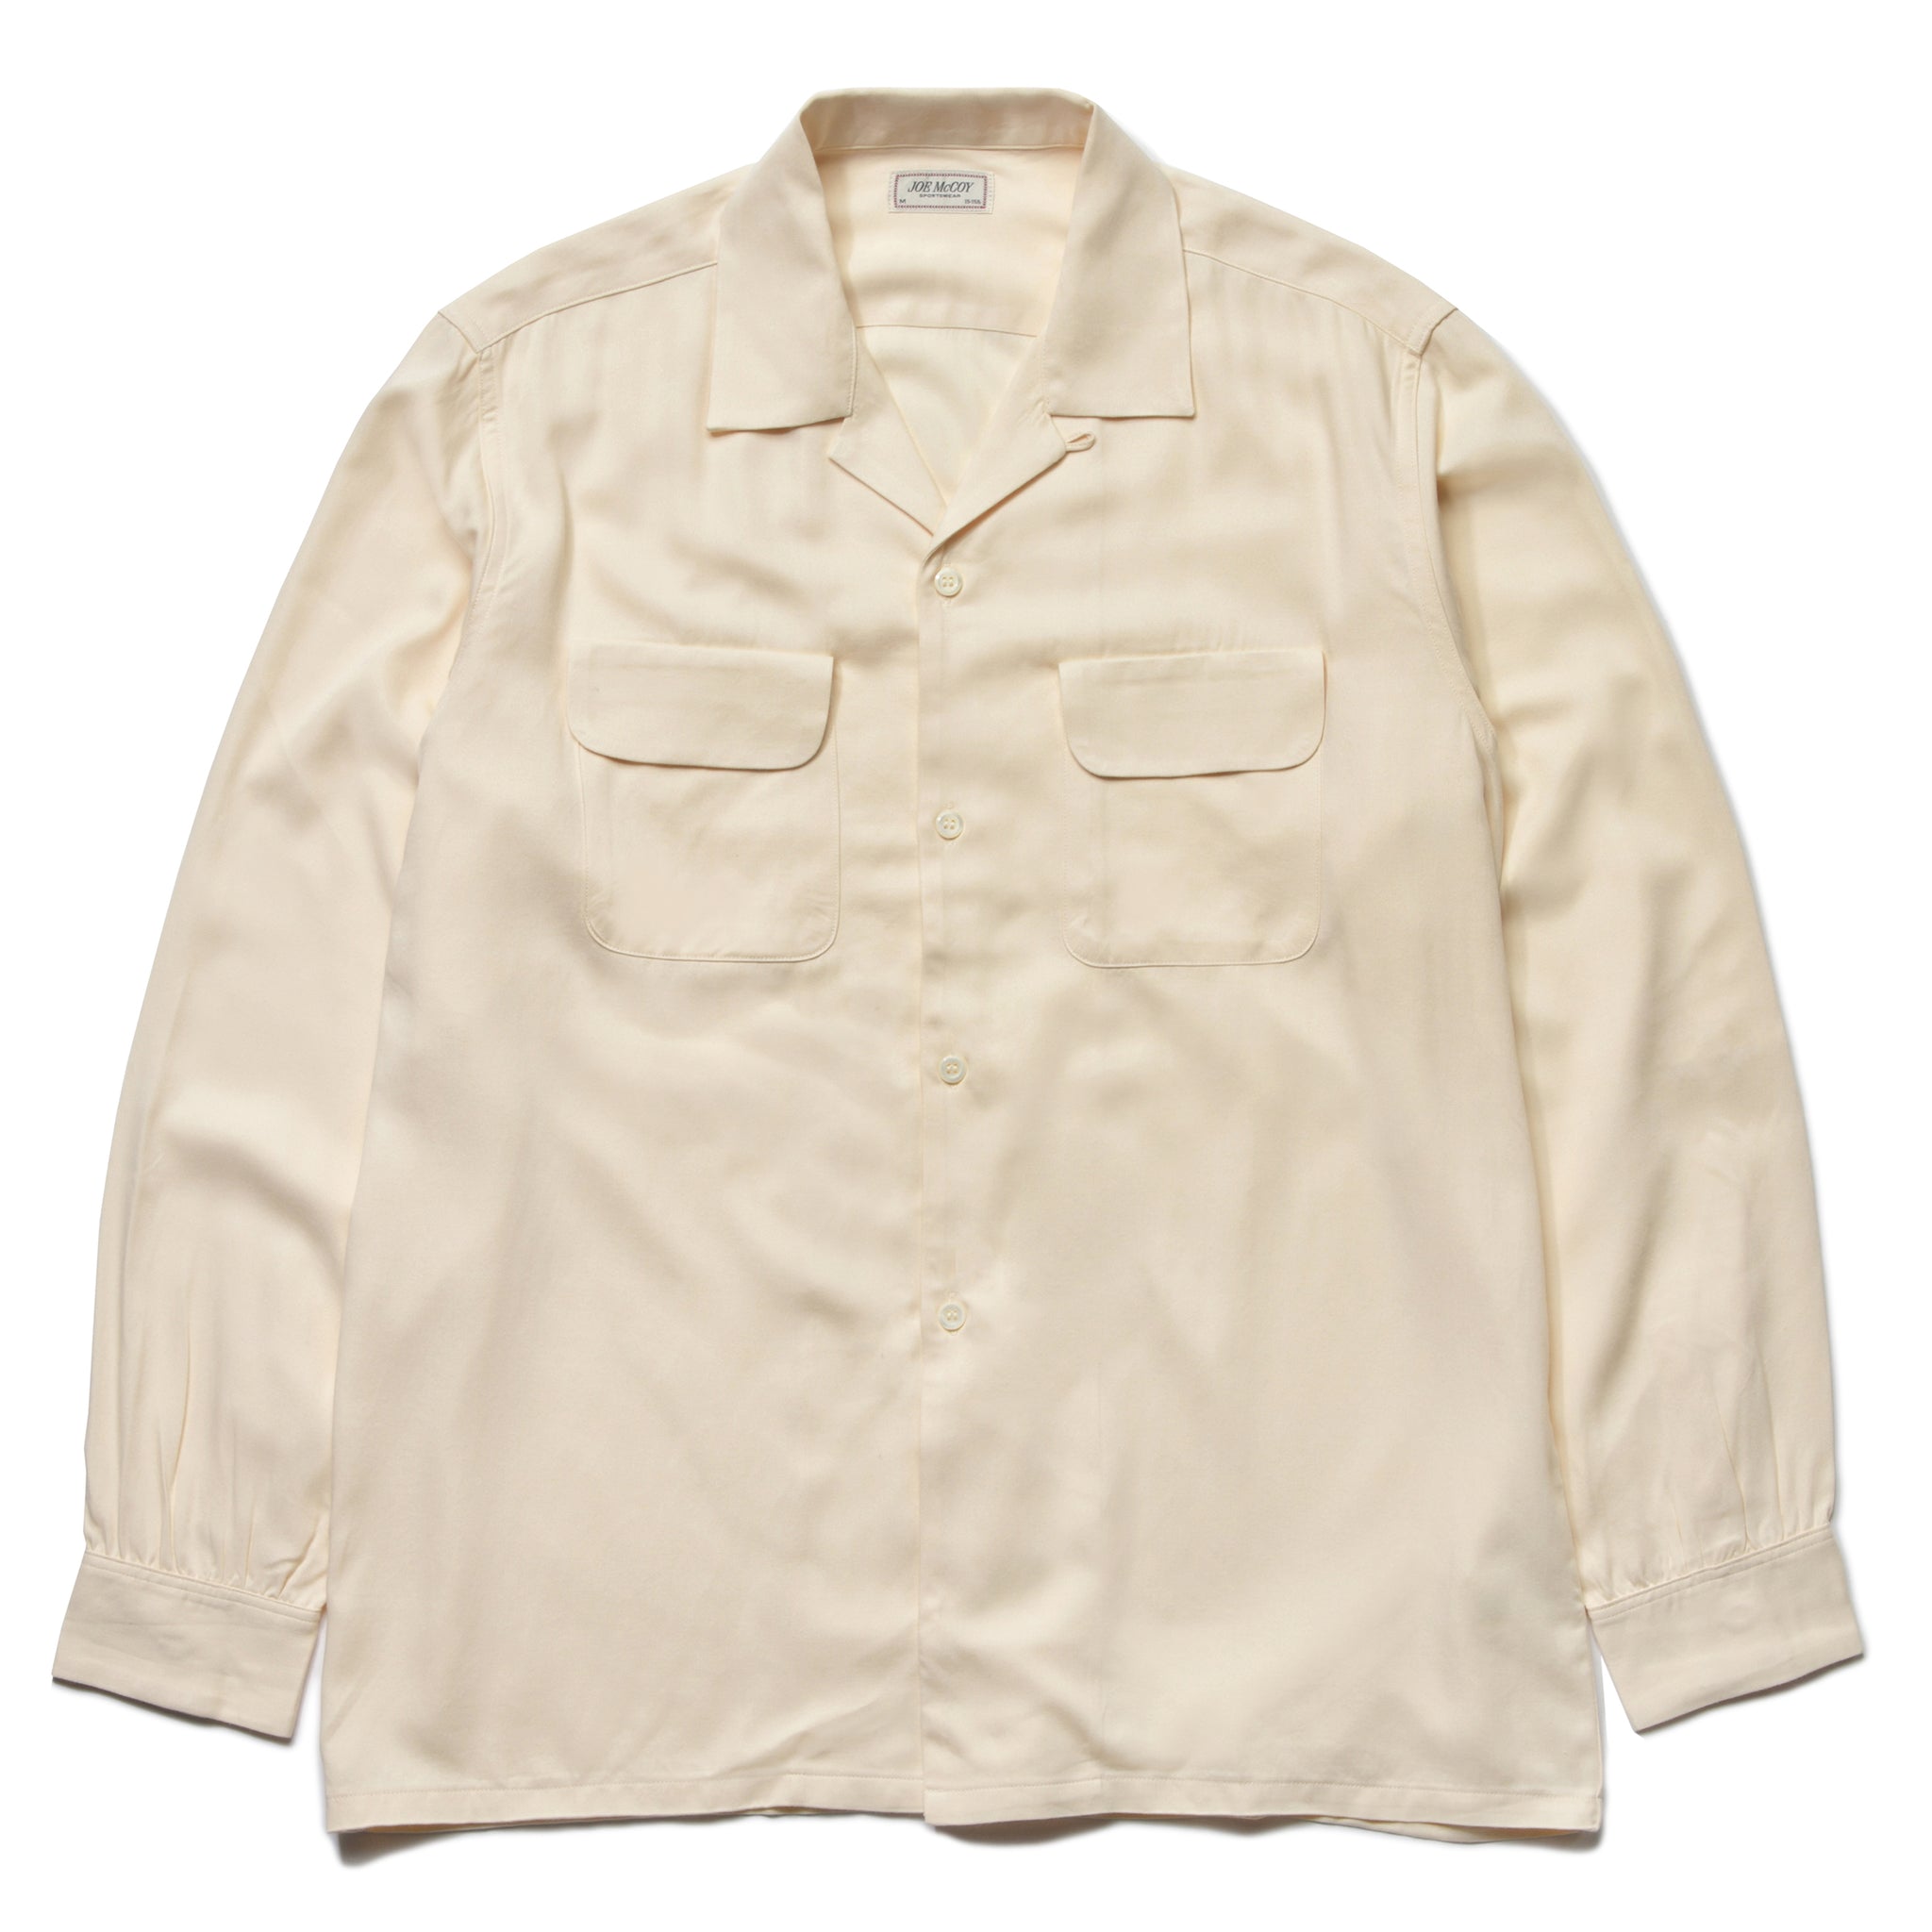 気質アップ】 50-60's Shirts Opencollar Rayon vintage トップス ...